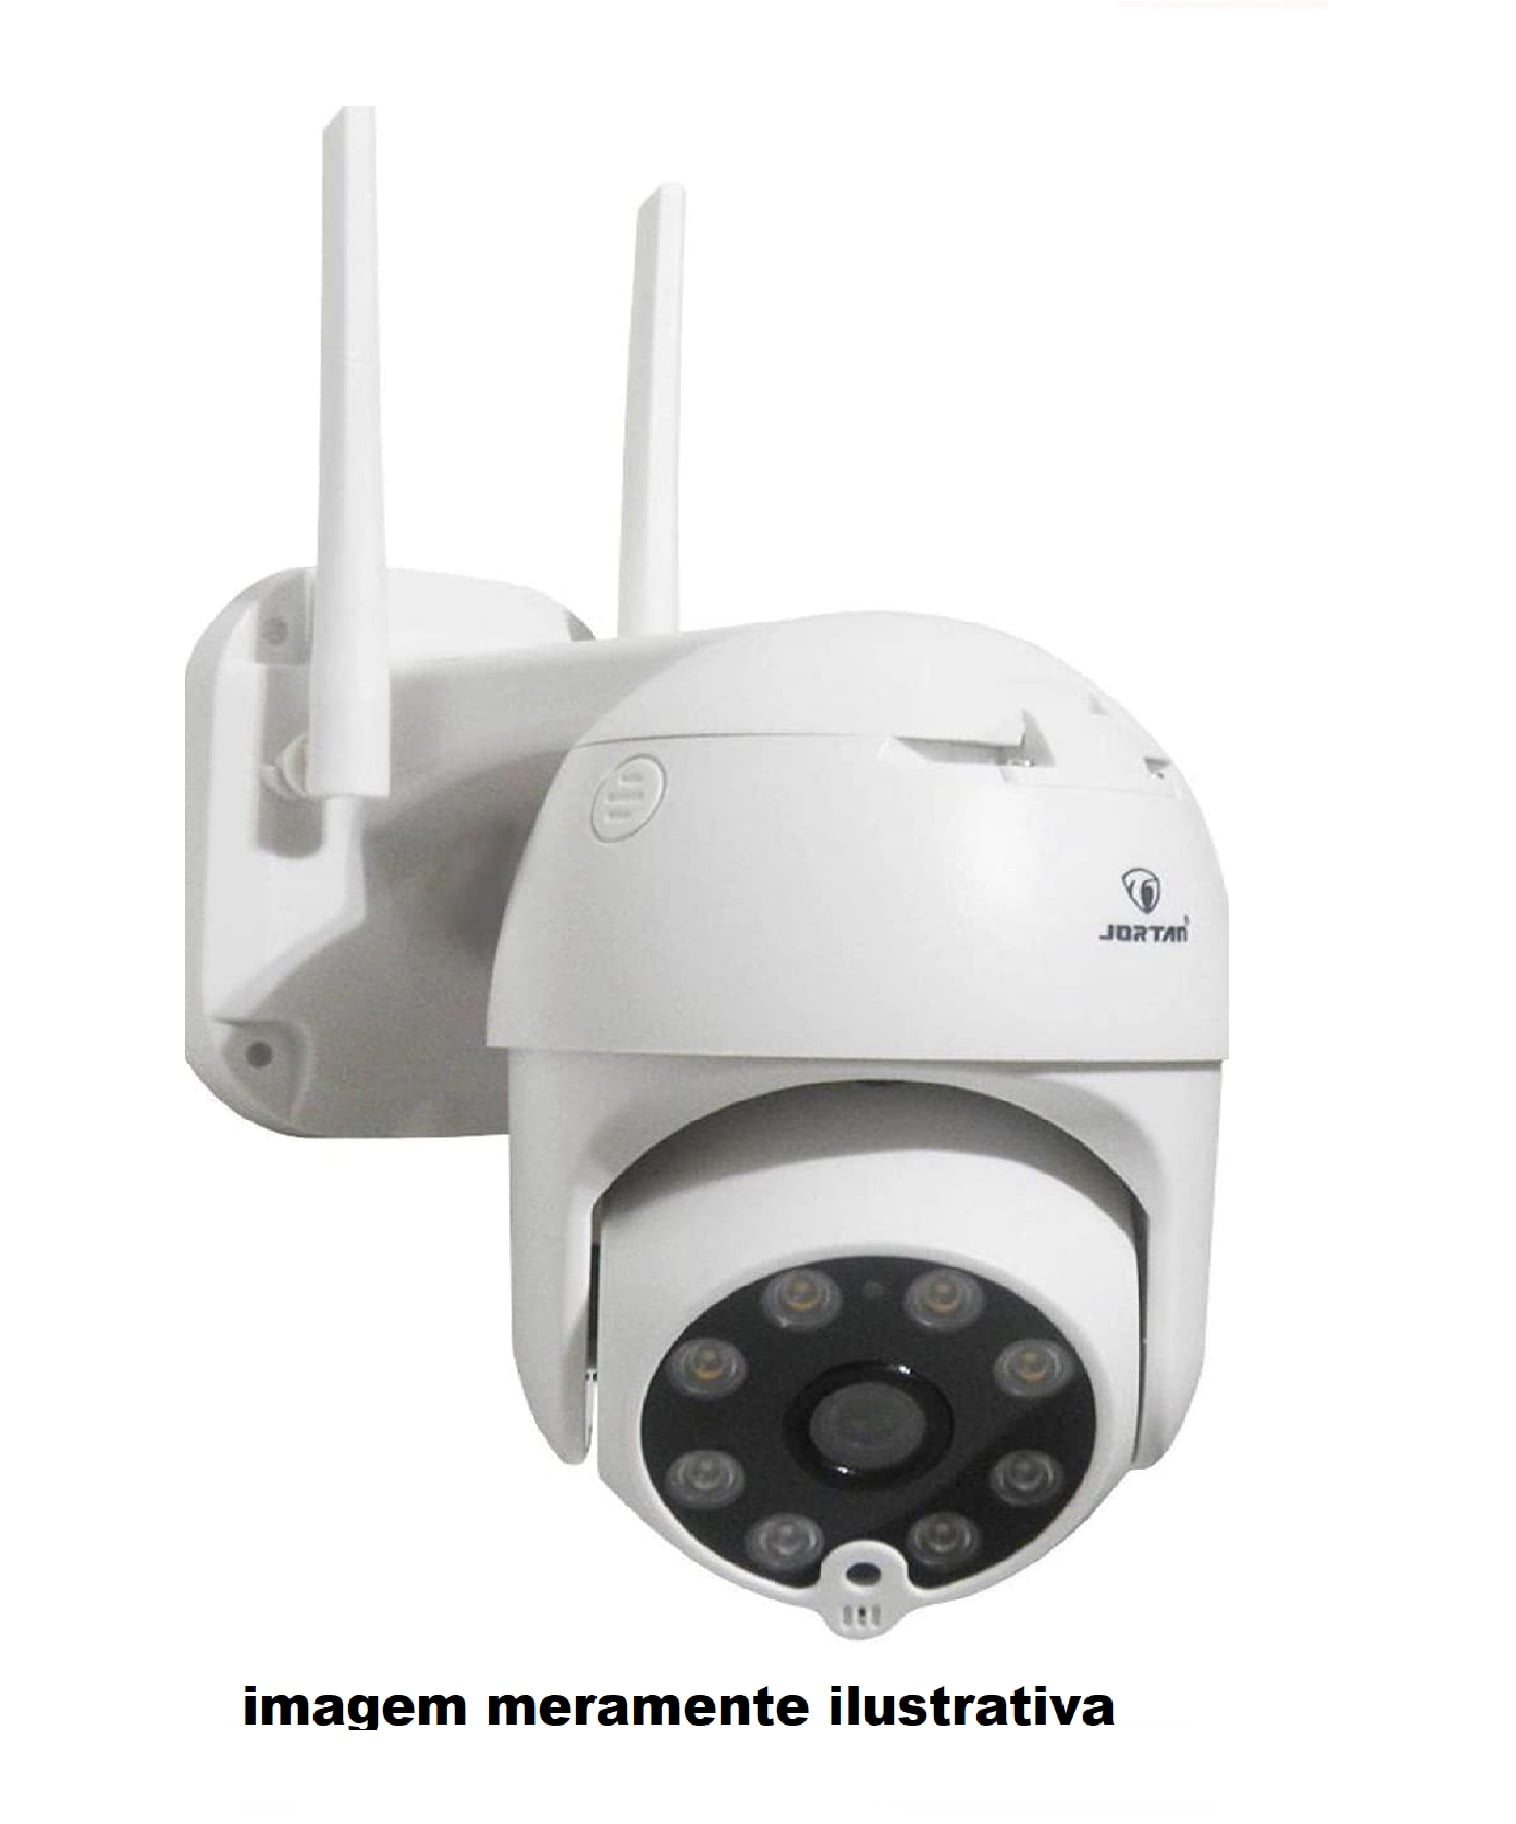 Camera Dome Wifi HD 360 Visao Noturna Panoramica Segurança Sem Fio